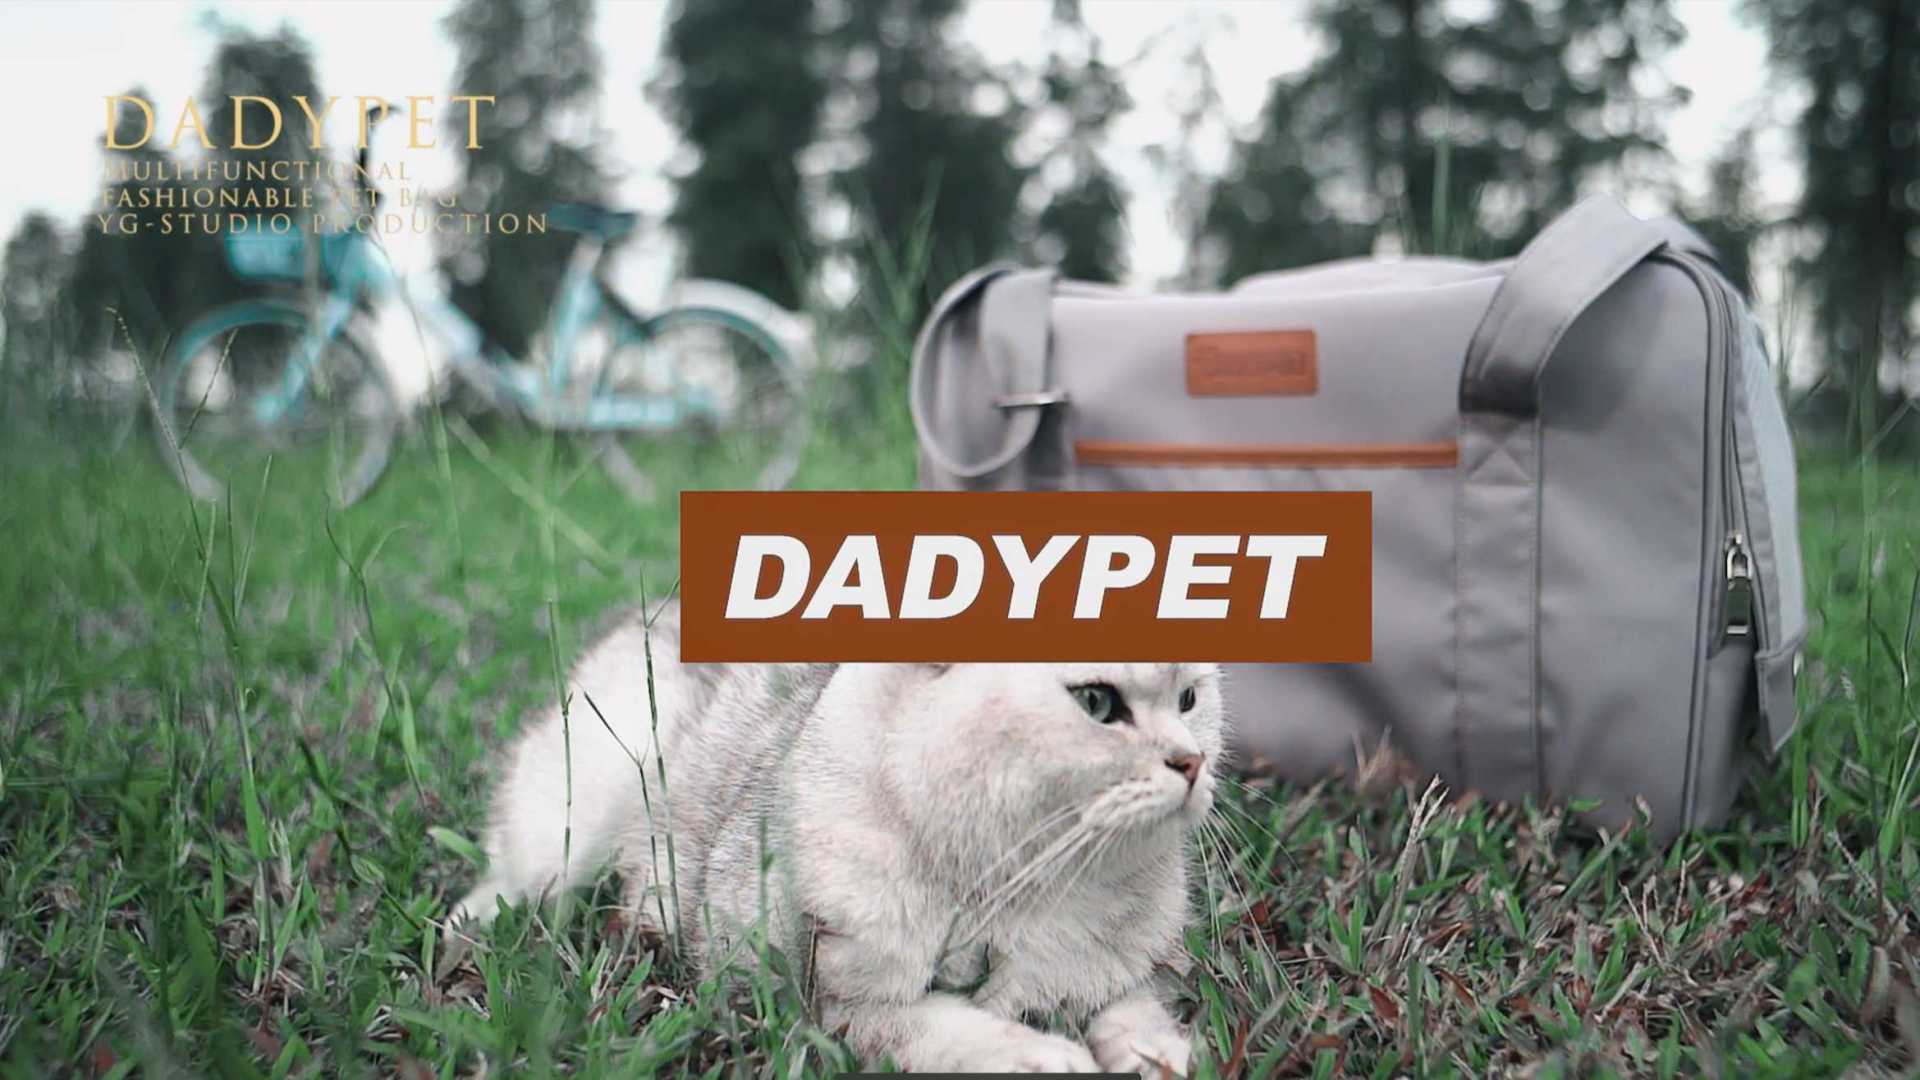 广告 | DadyPet  多功能宠物包  15秒导演版